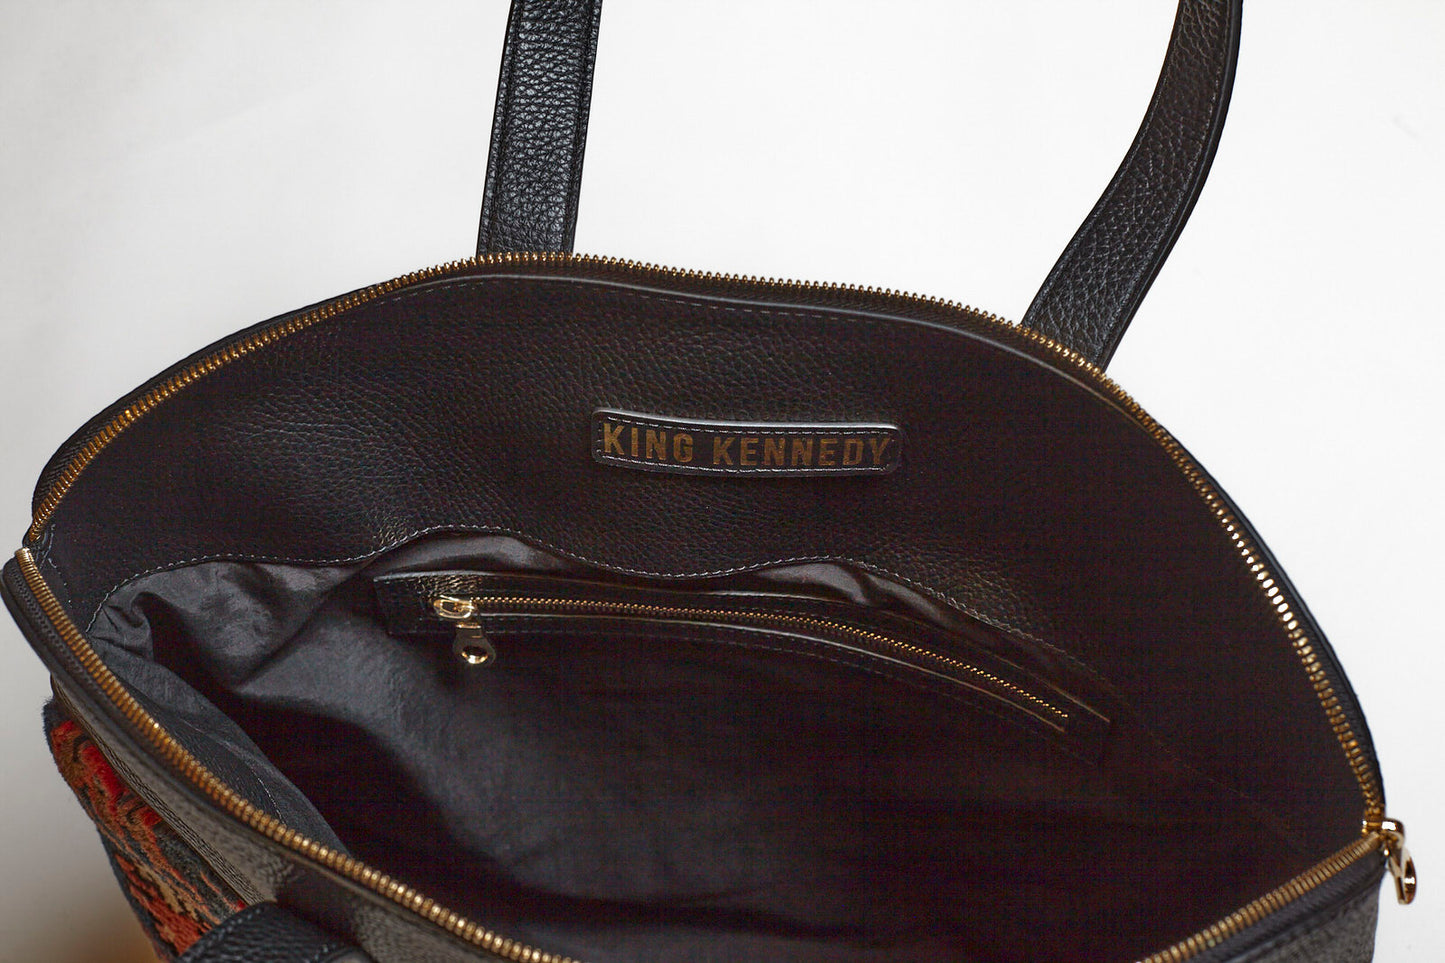 King Kennedy Despina Bag - 00017